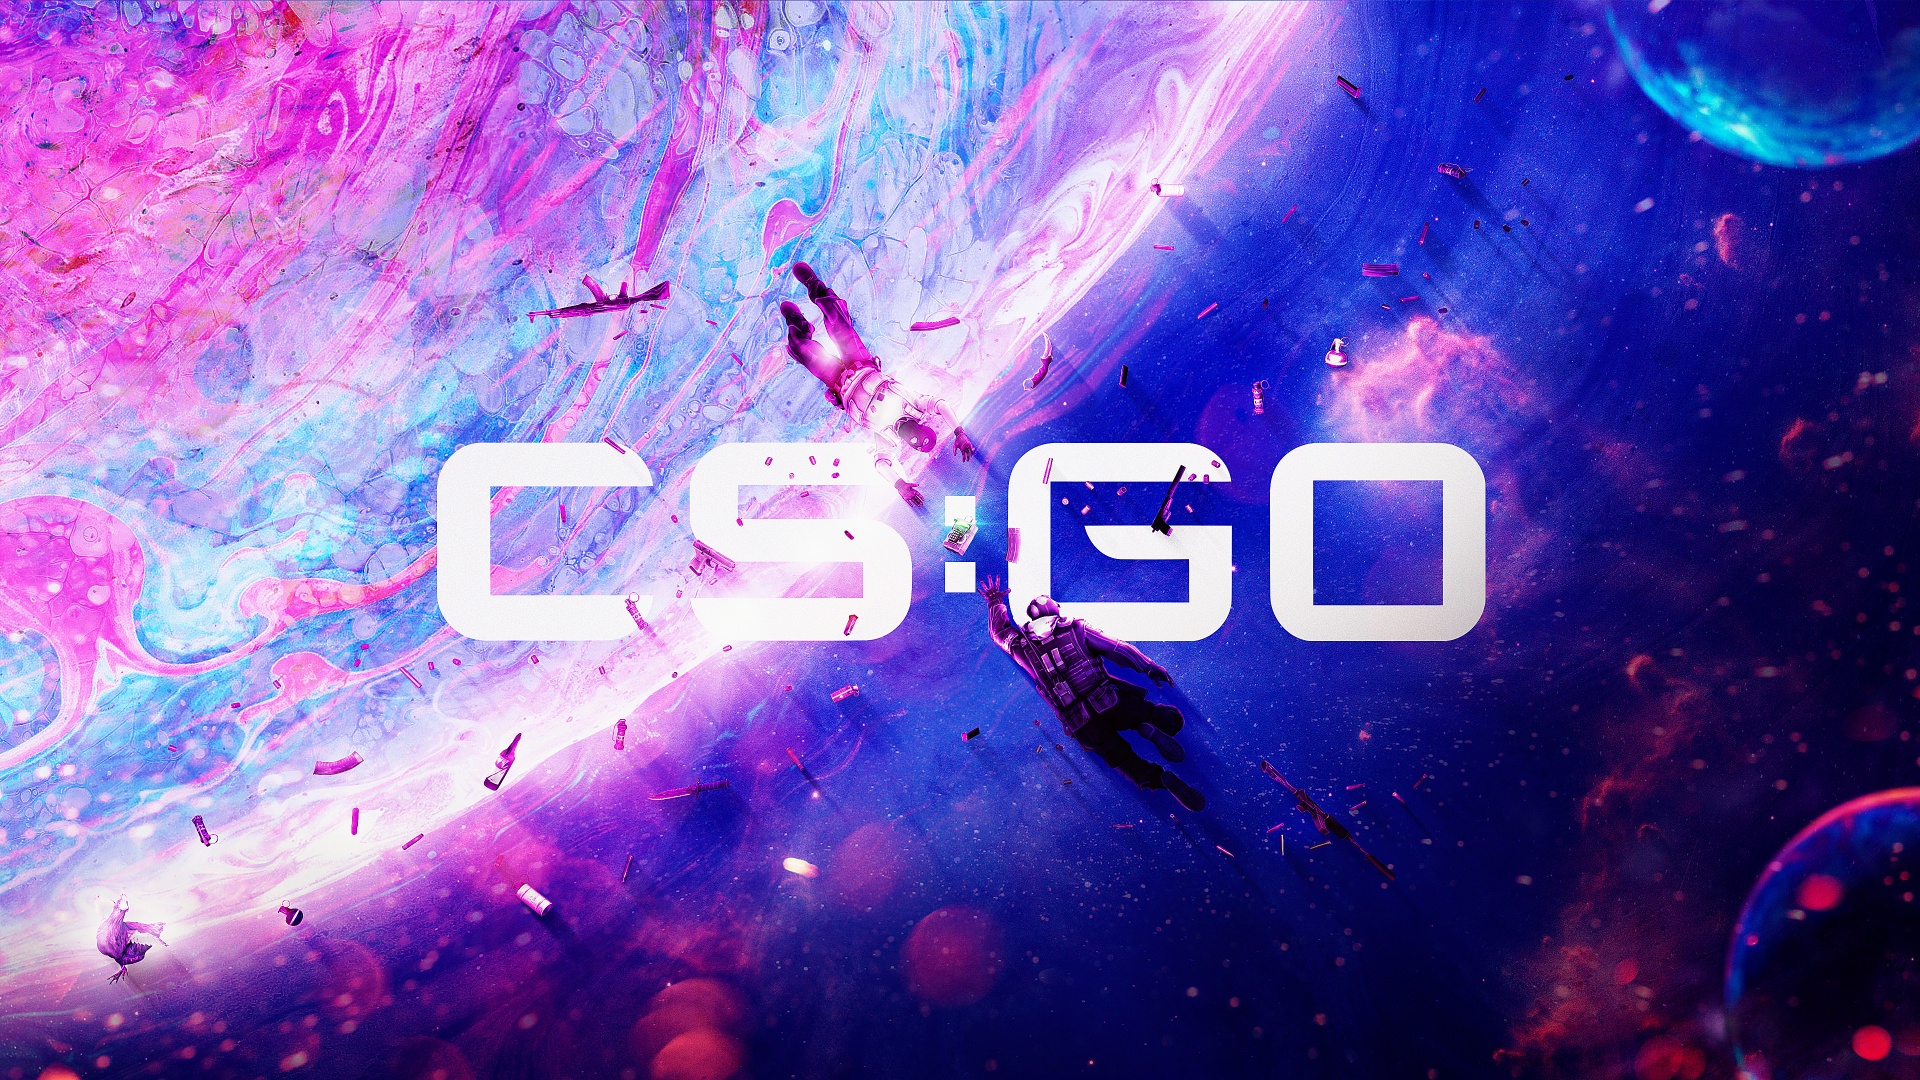 Counter-Strike: Global Offensive 4K Wallpaper, CS GO, 2020 Games, 4K